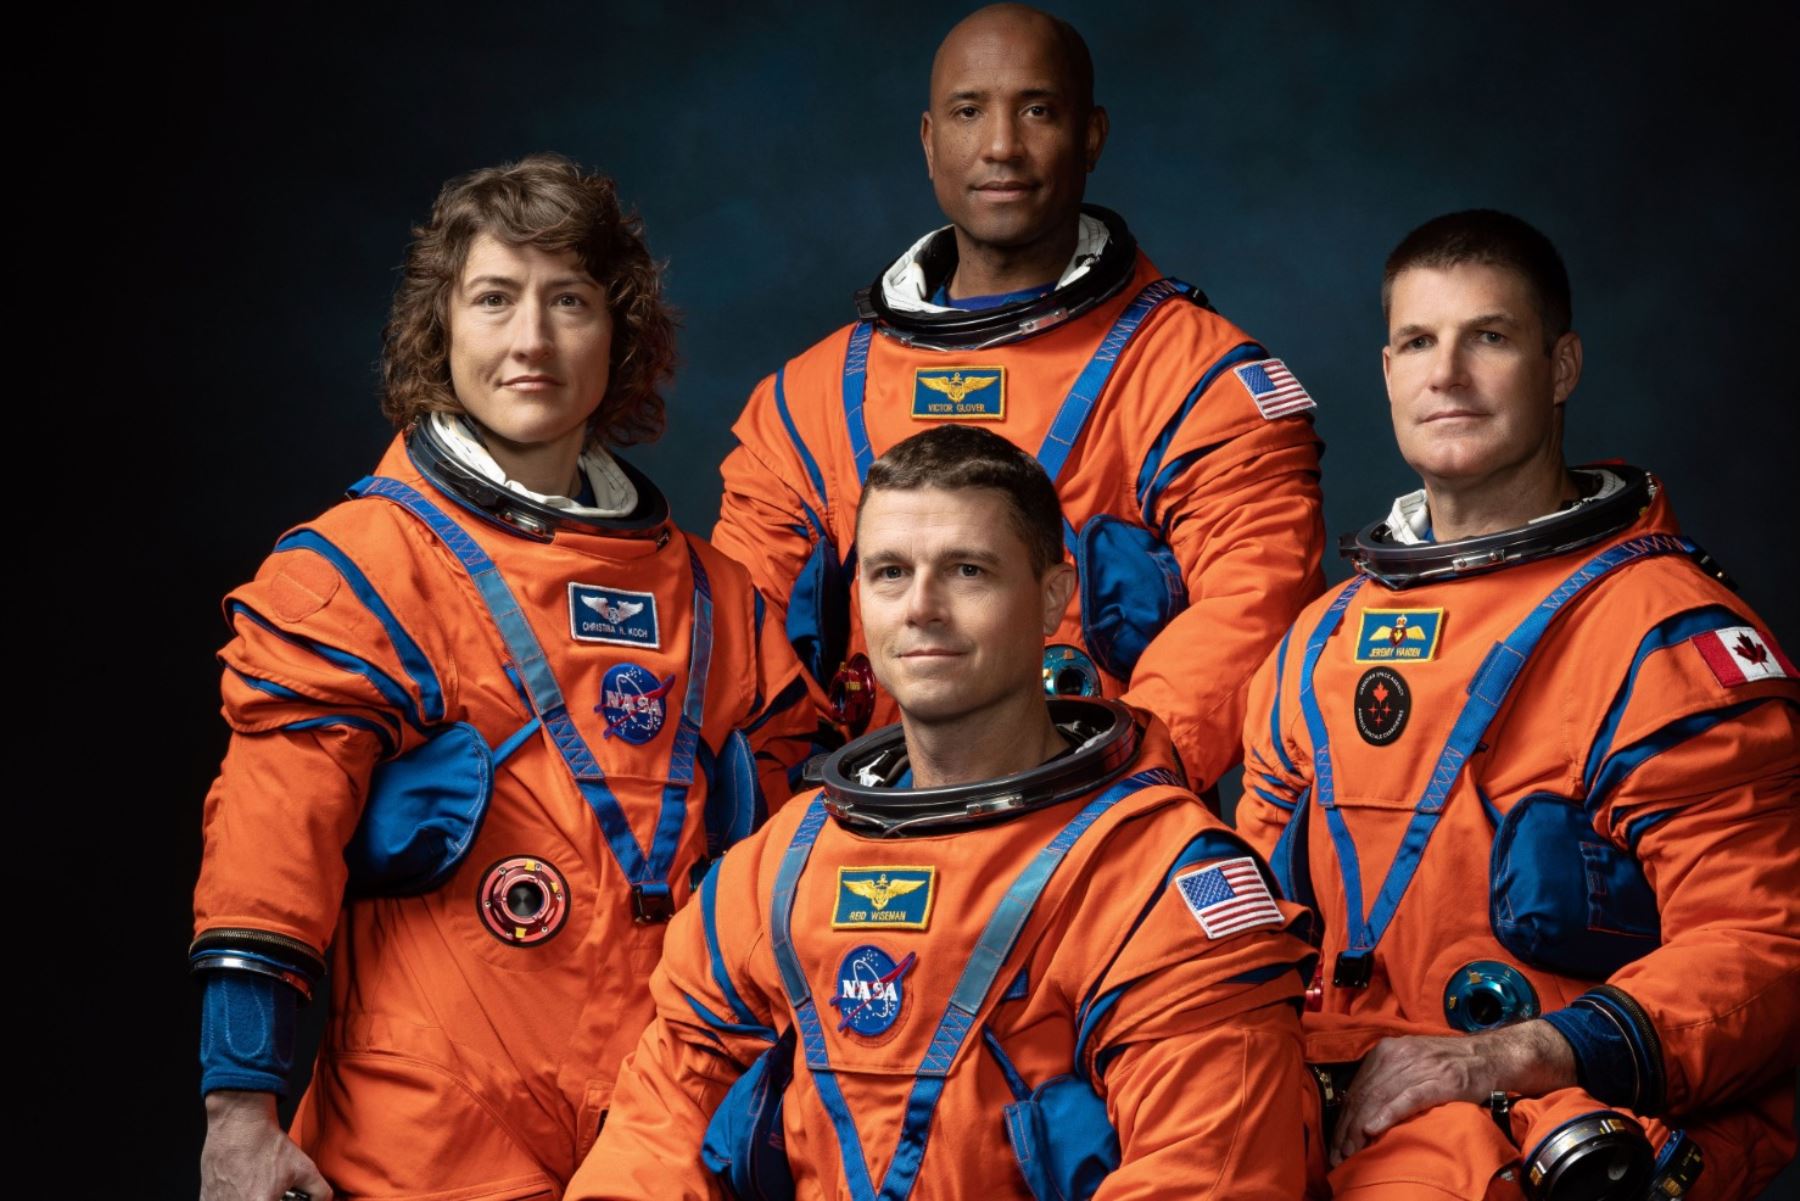 La tripulación de la misión Artemis II de la NASA (de izquierda a derecha): los astronautas de la NASA Christina Hammock Koch, Reid Wiseman (sentado), Victor Glover y el astronauta de la Agencia Espacial Canadiense Jeremy Hansen.